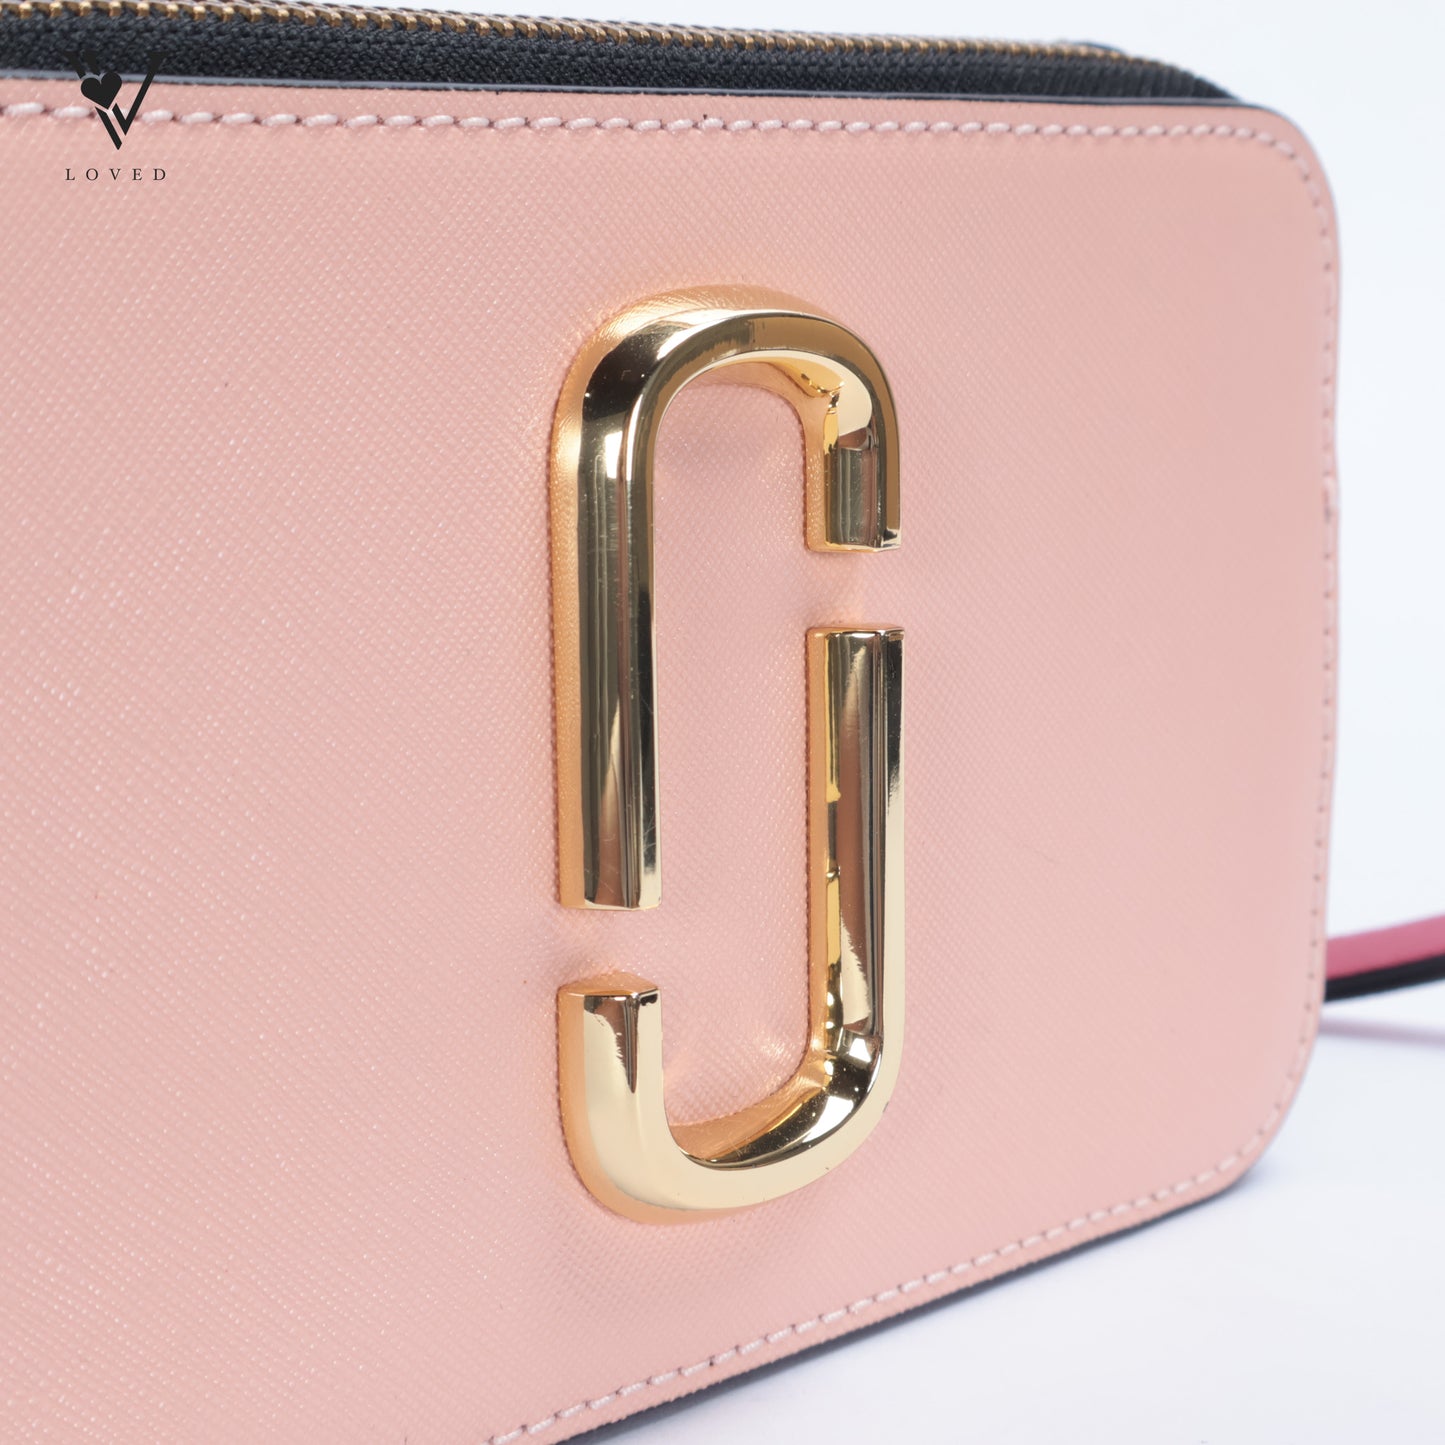 Snapshot Bag in Pink